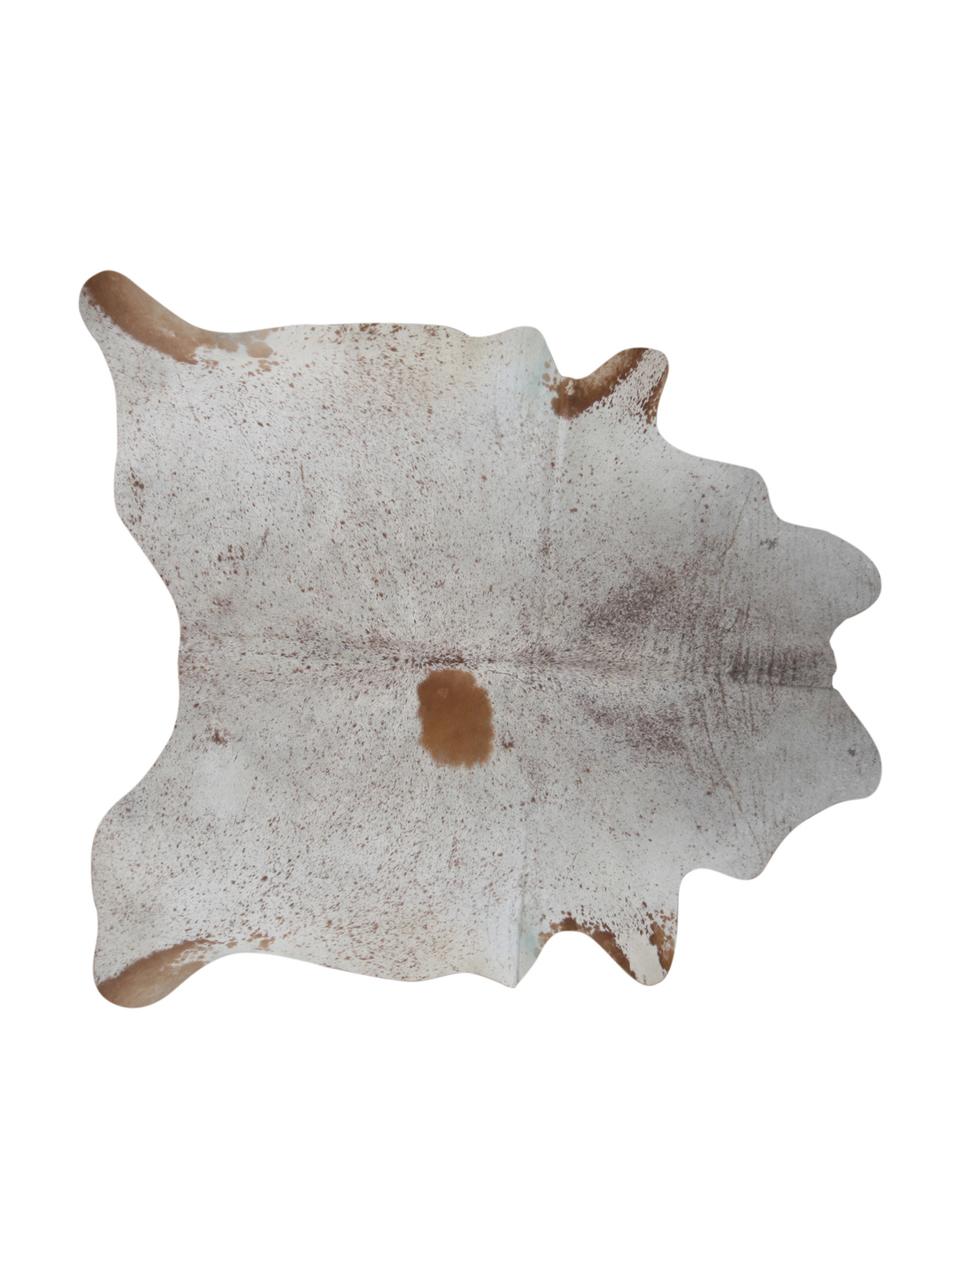 Tappeto in pelle di mucca Anna, Pelle di mucca, Beige, Pelle di mucca unica 1090, 160 x 180 cm